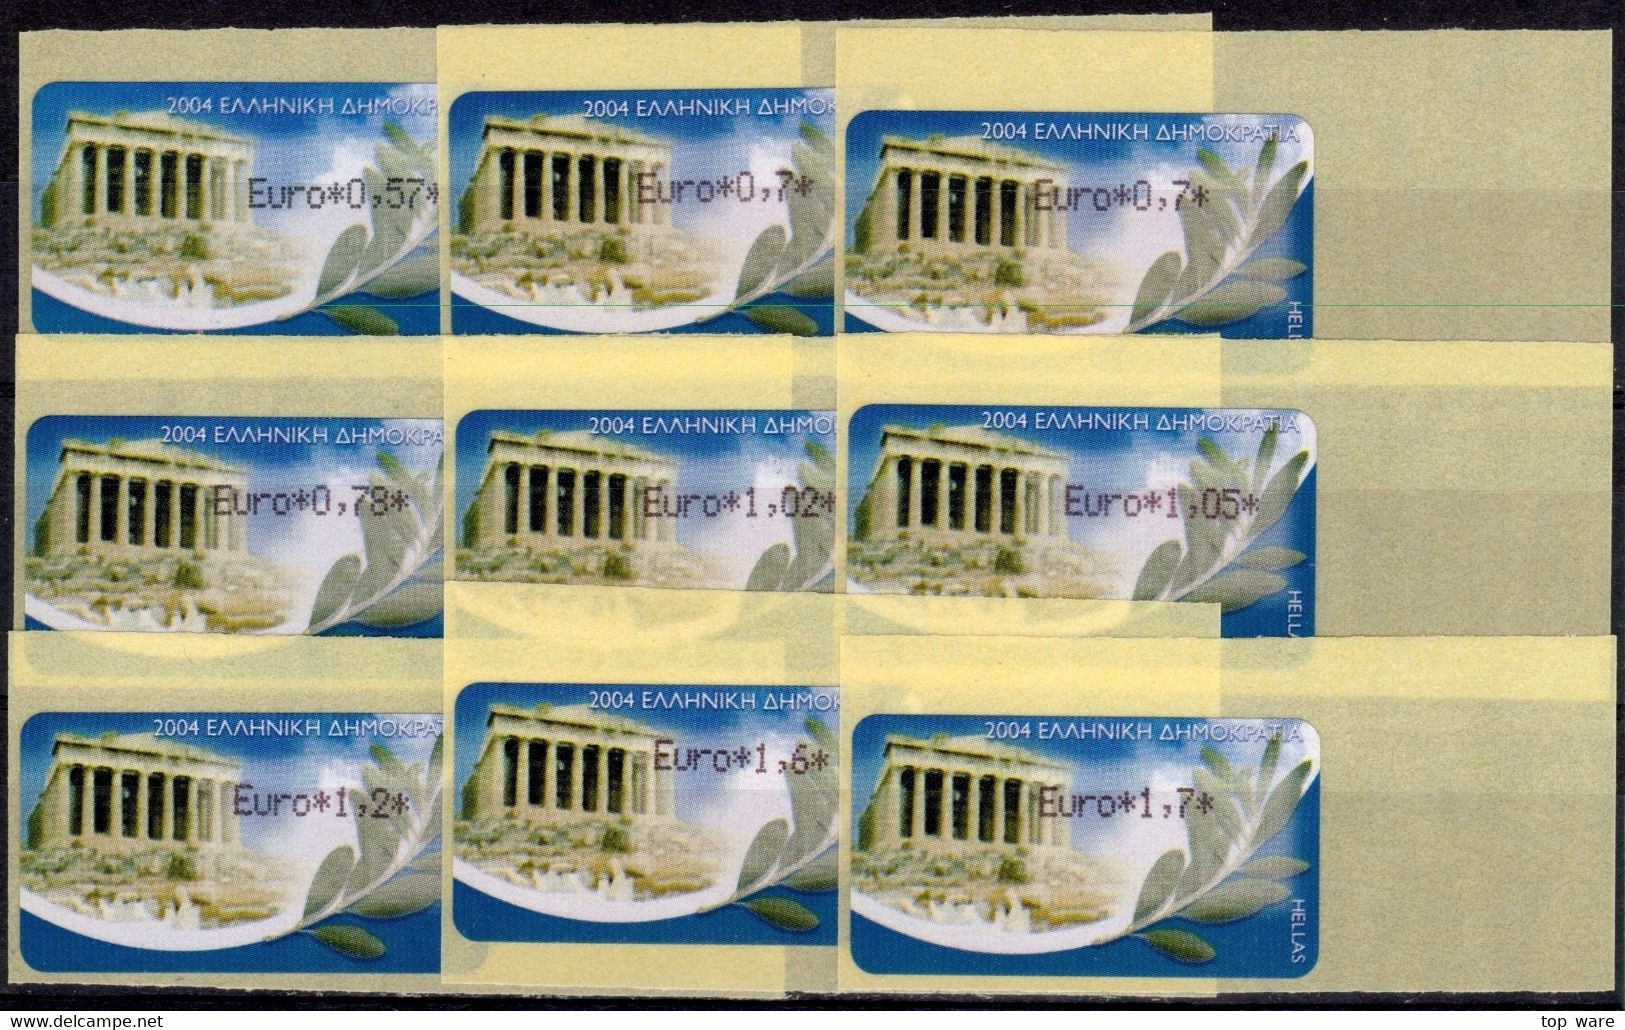 Greece Griechenland HELLAS ATM 22 Parthenon Reprint Paper 2008 * Set 18 Values MNH * Frama Etiquetas Automatenmarken - Machine Labels [ATM]